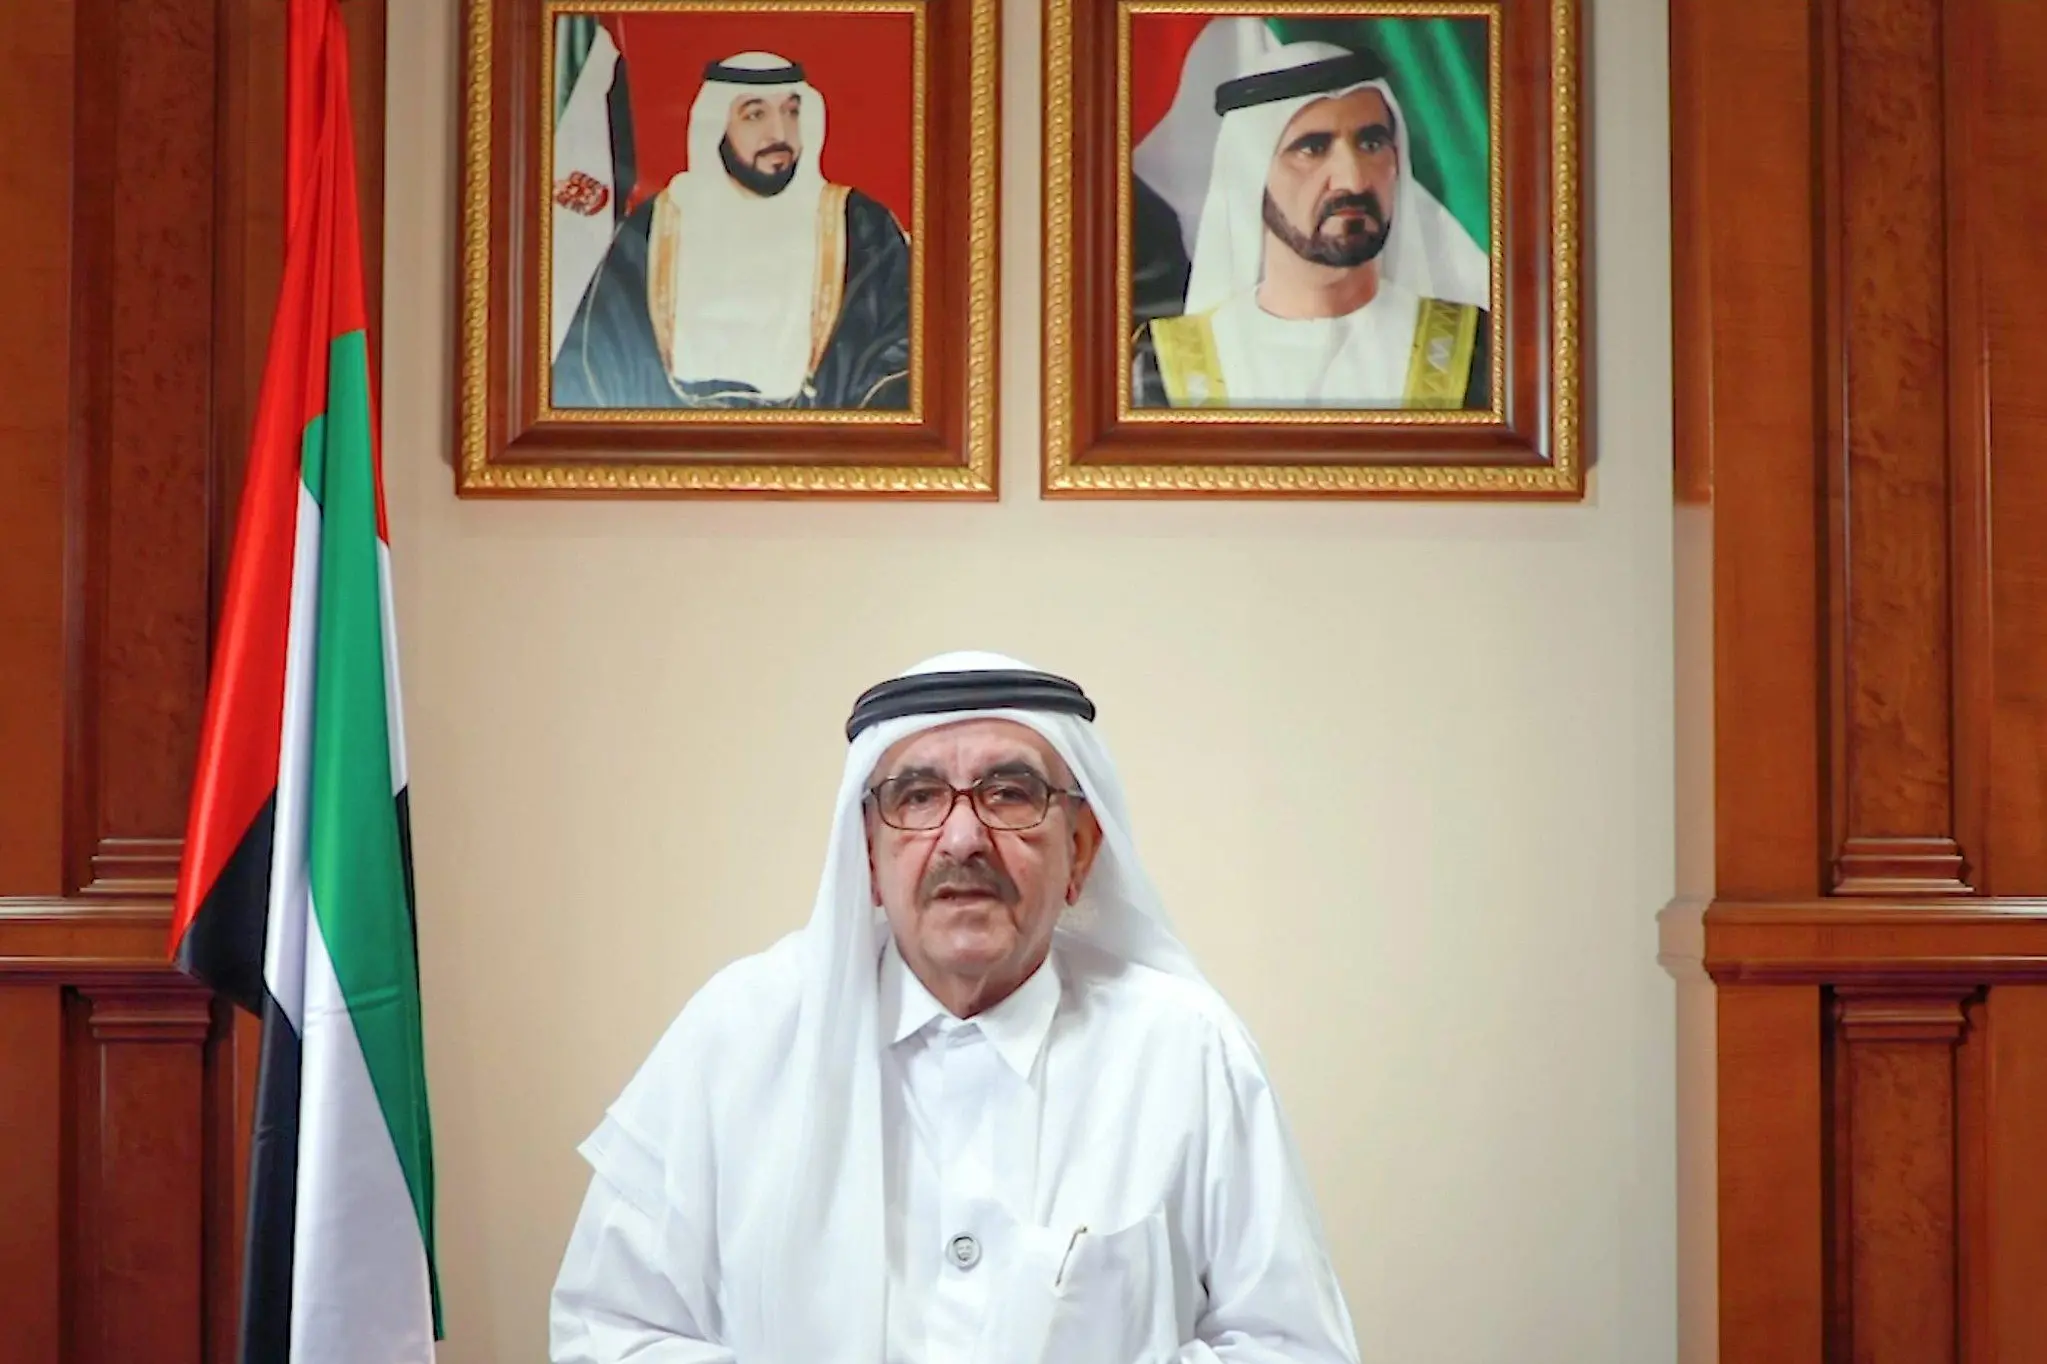 ماذا نعرف عن أول وزير للمالية في الإمارات الراحل حمدان بن راشد؟